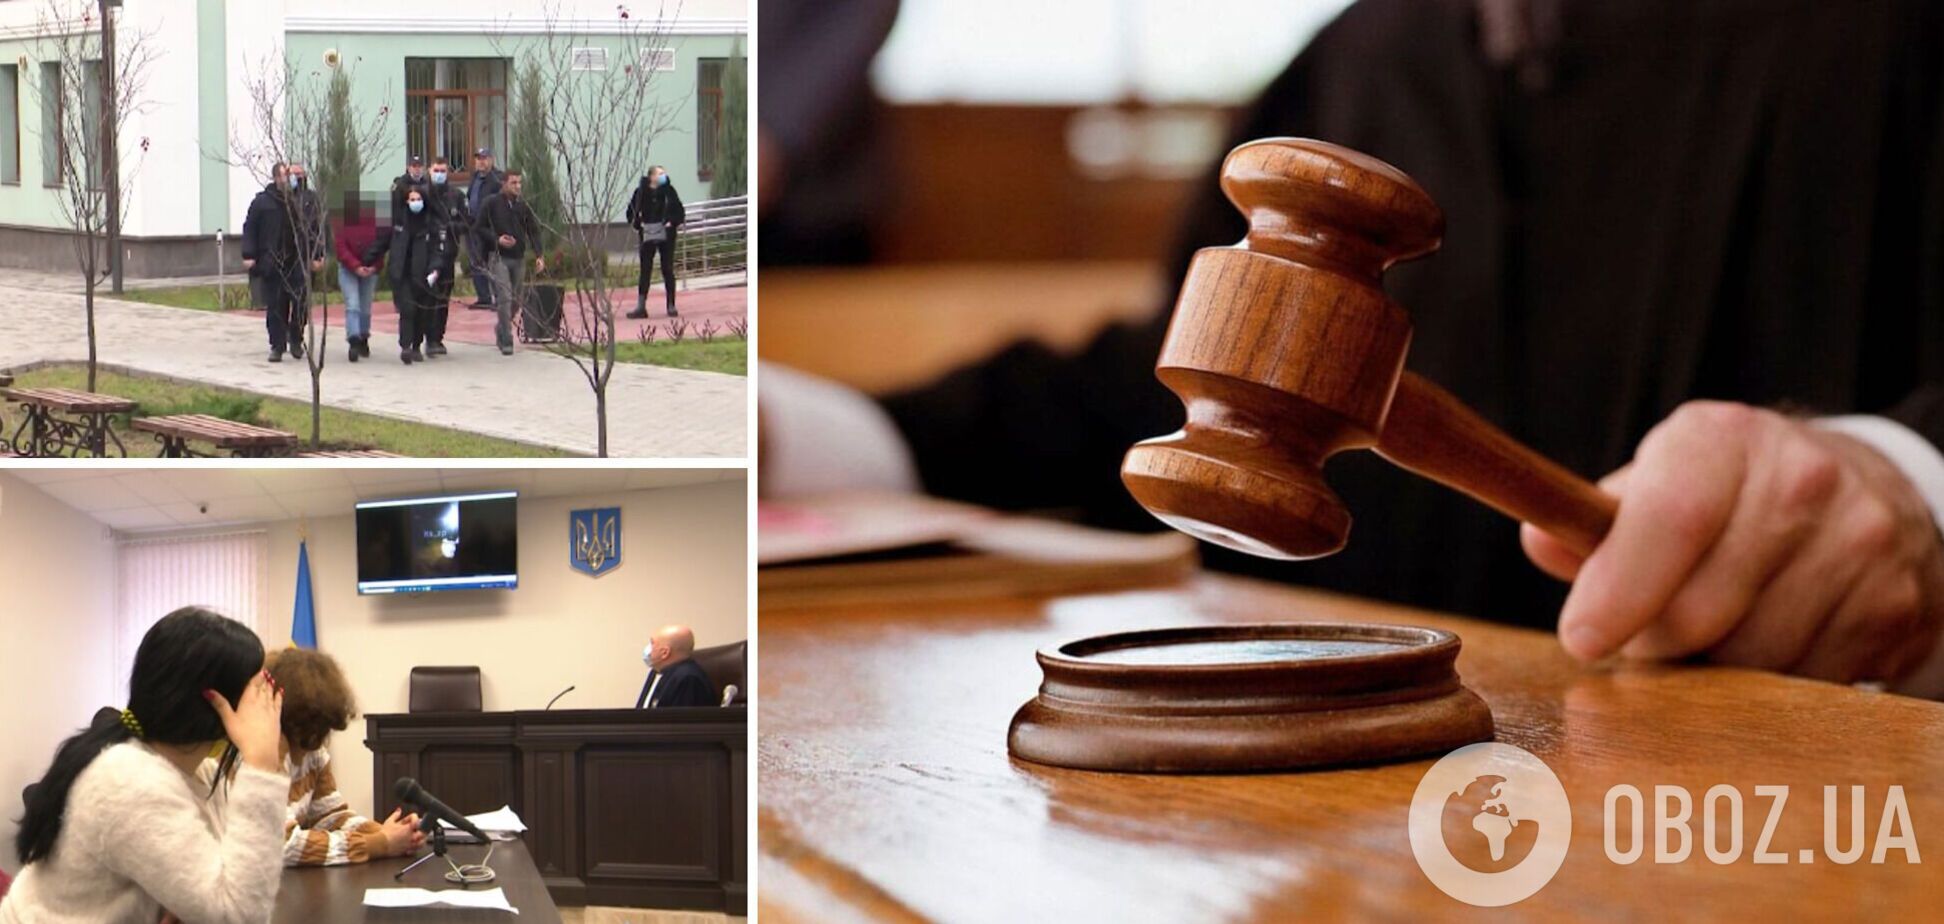 В Запорожье суд отправил в СИЗО 16-летнюю девушку, которая жестоко избила ровесниц. Видео